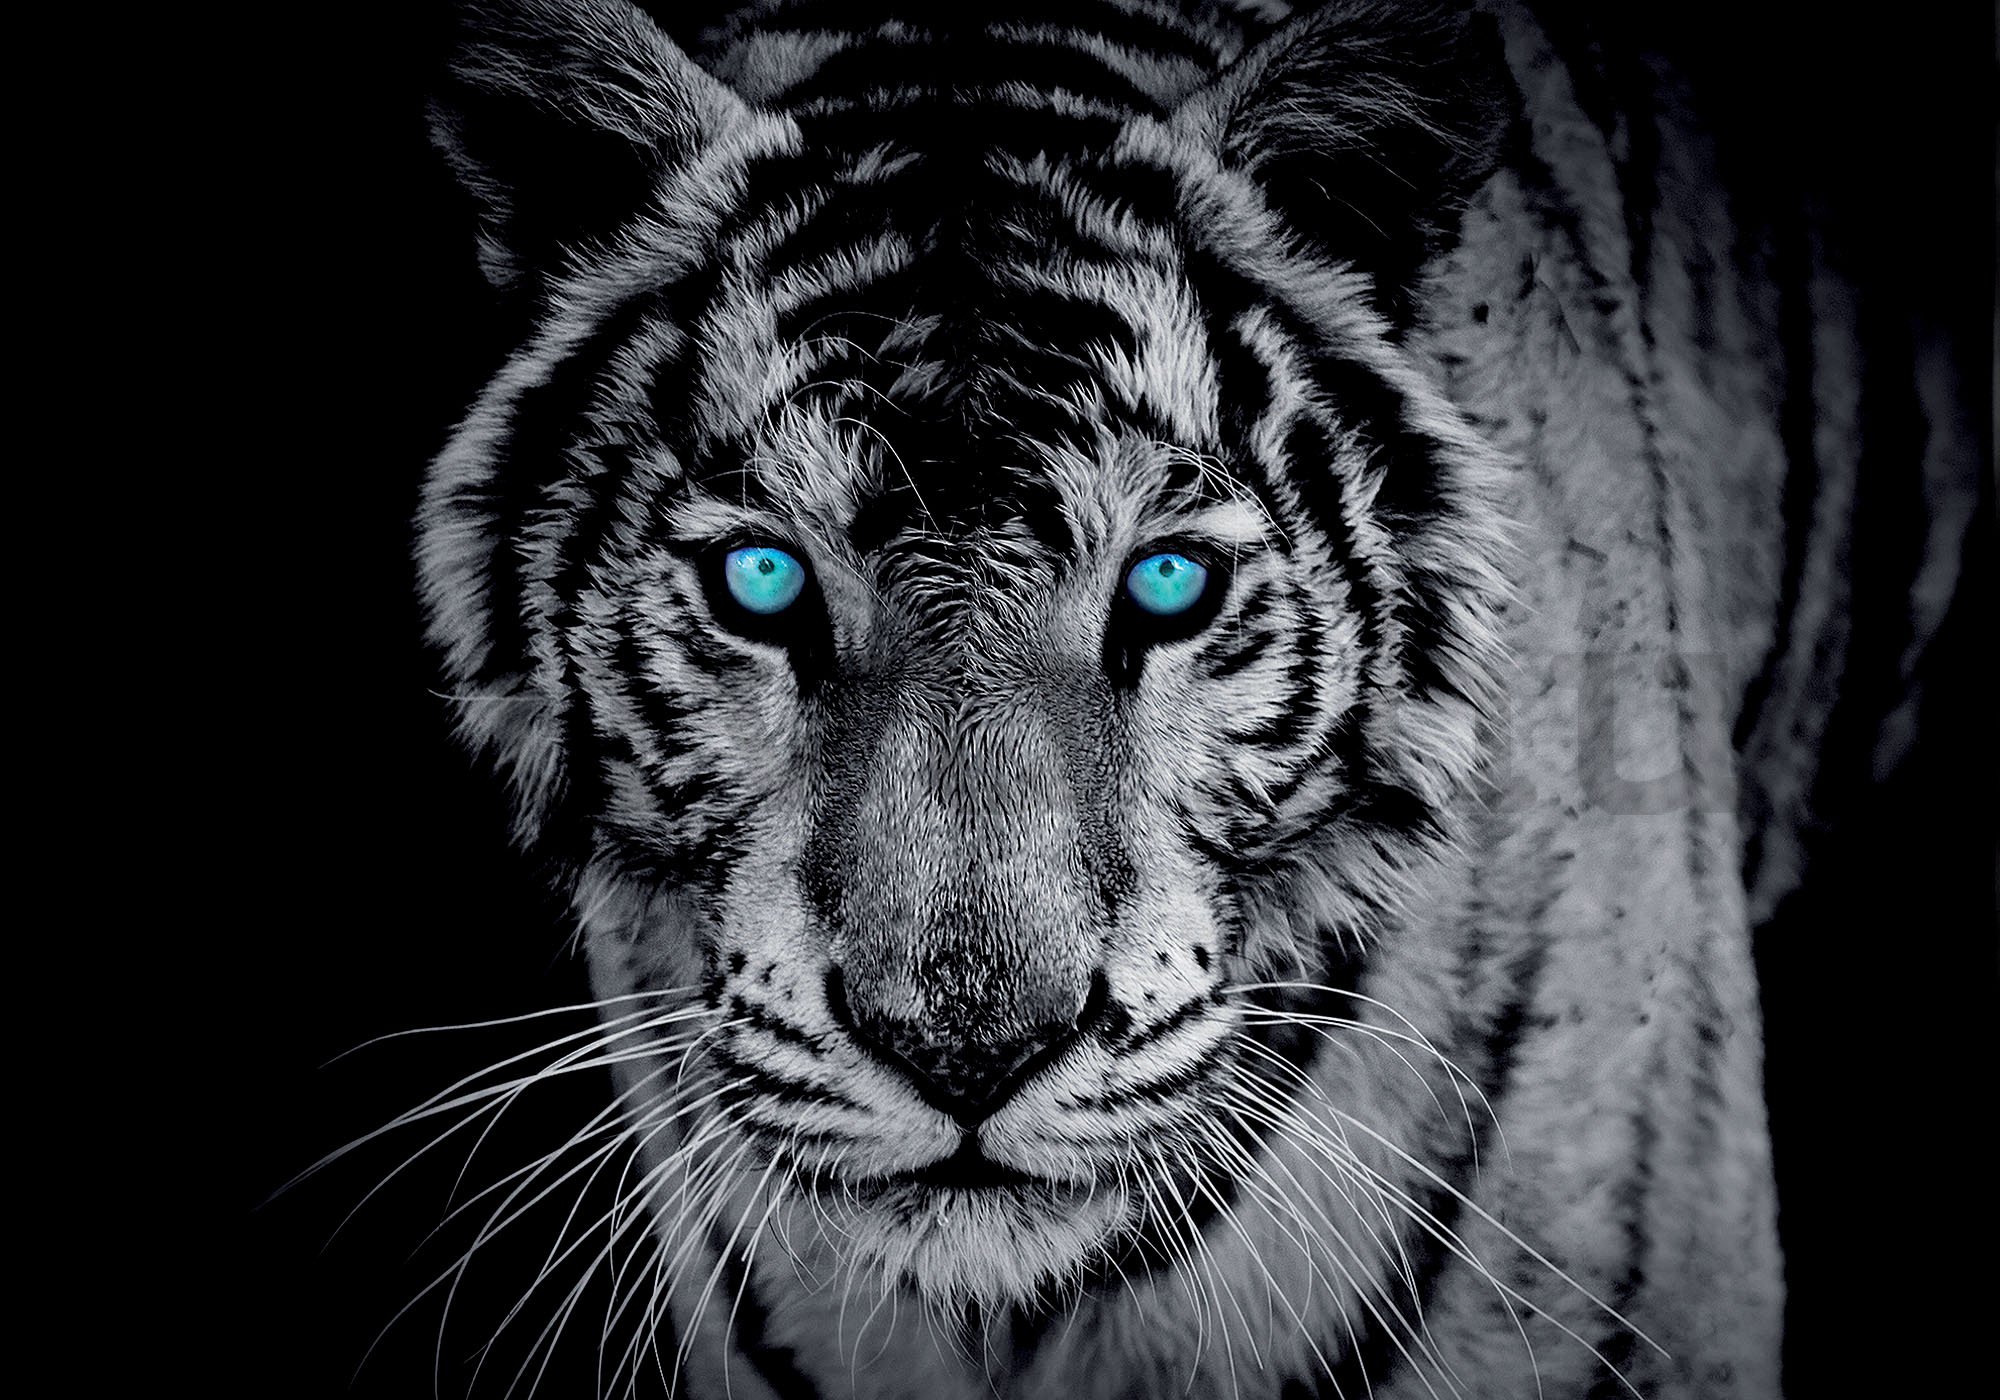 Fotótapéta: Fekete-fehér tigris - 254x368 cm